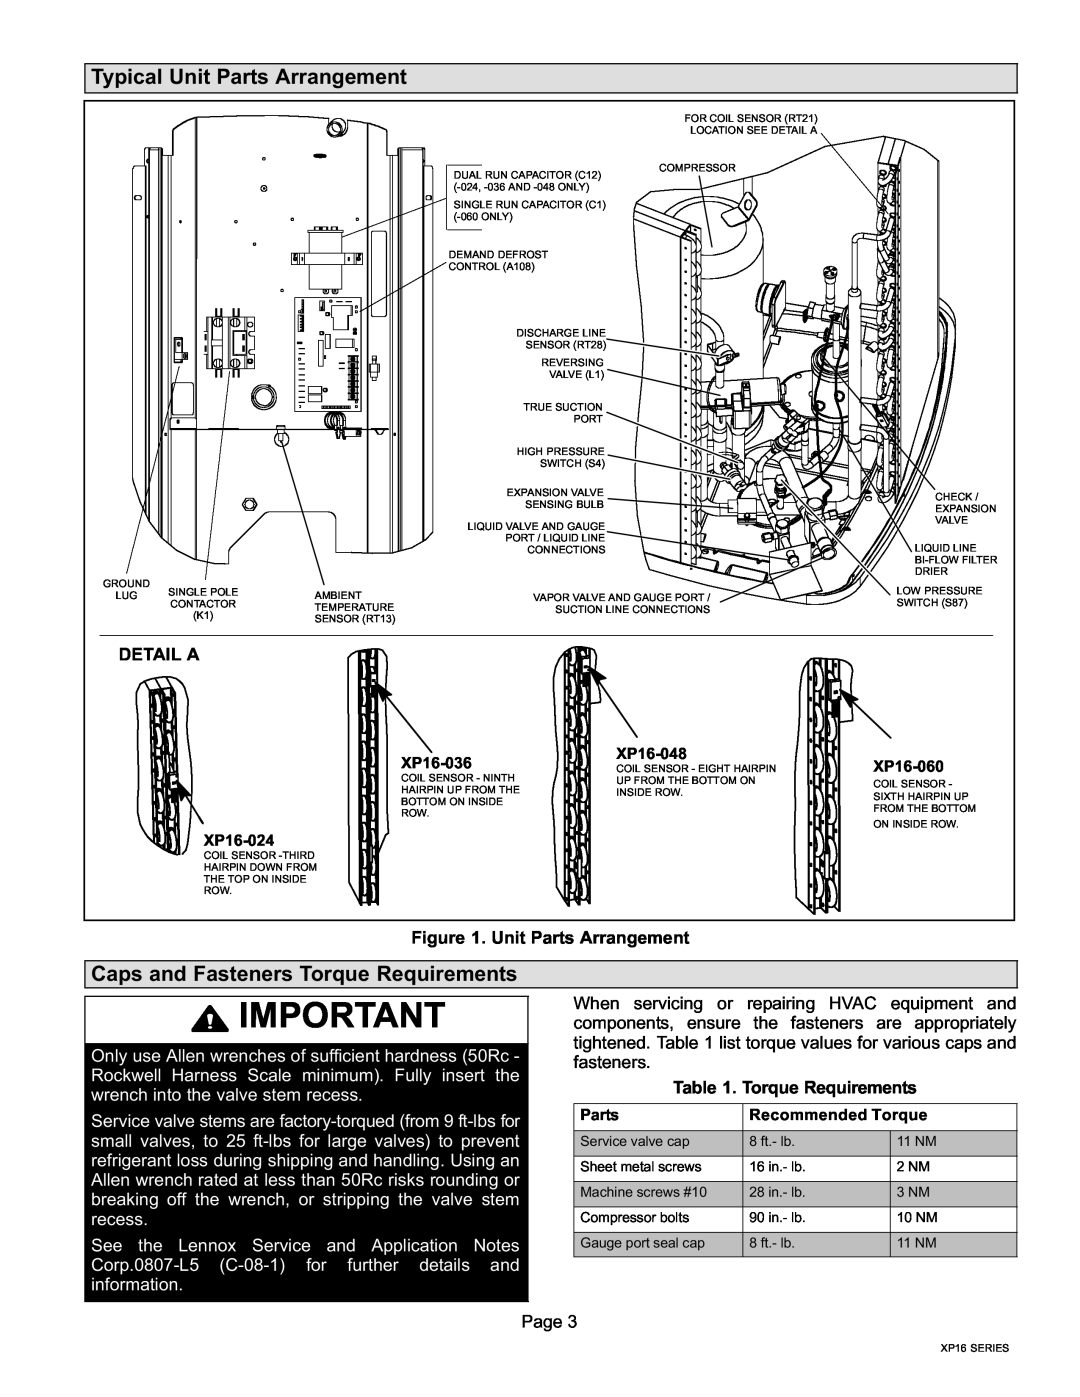 Lenox Elite Series XP16 Units Heat Pumps Typical Unit Parts Arrangement, Caps and Fasteners Torque Requirements, Detail A 